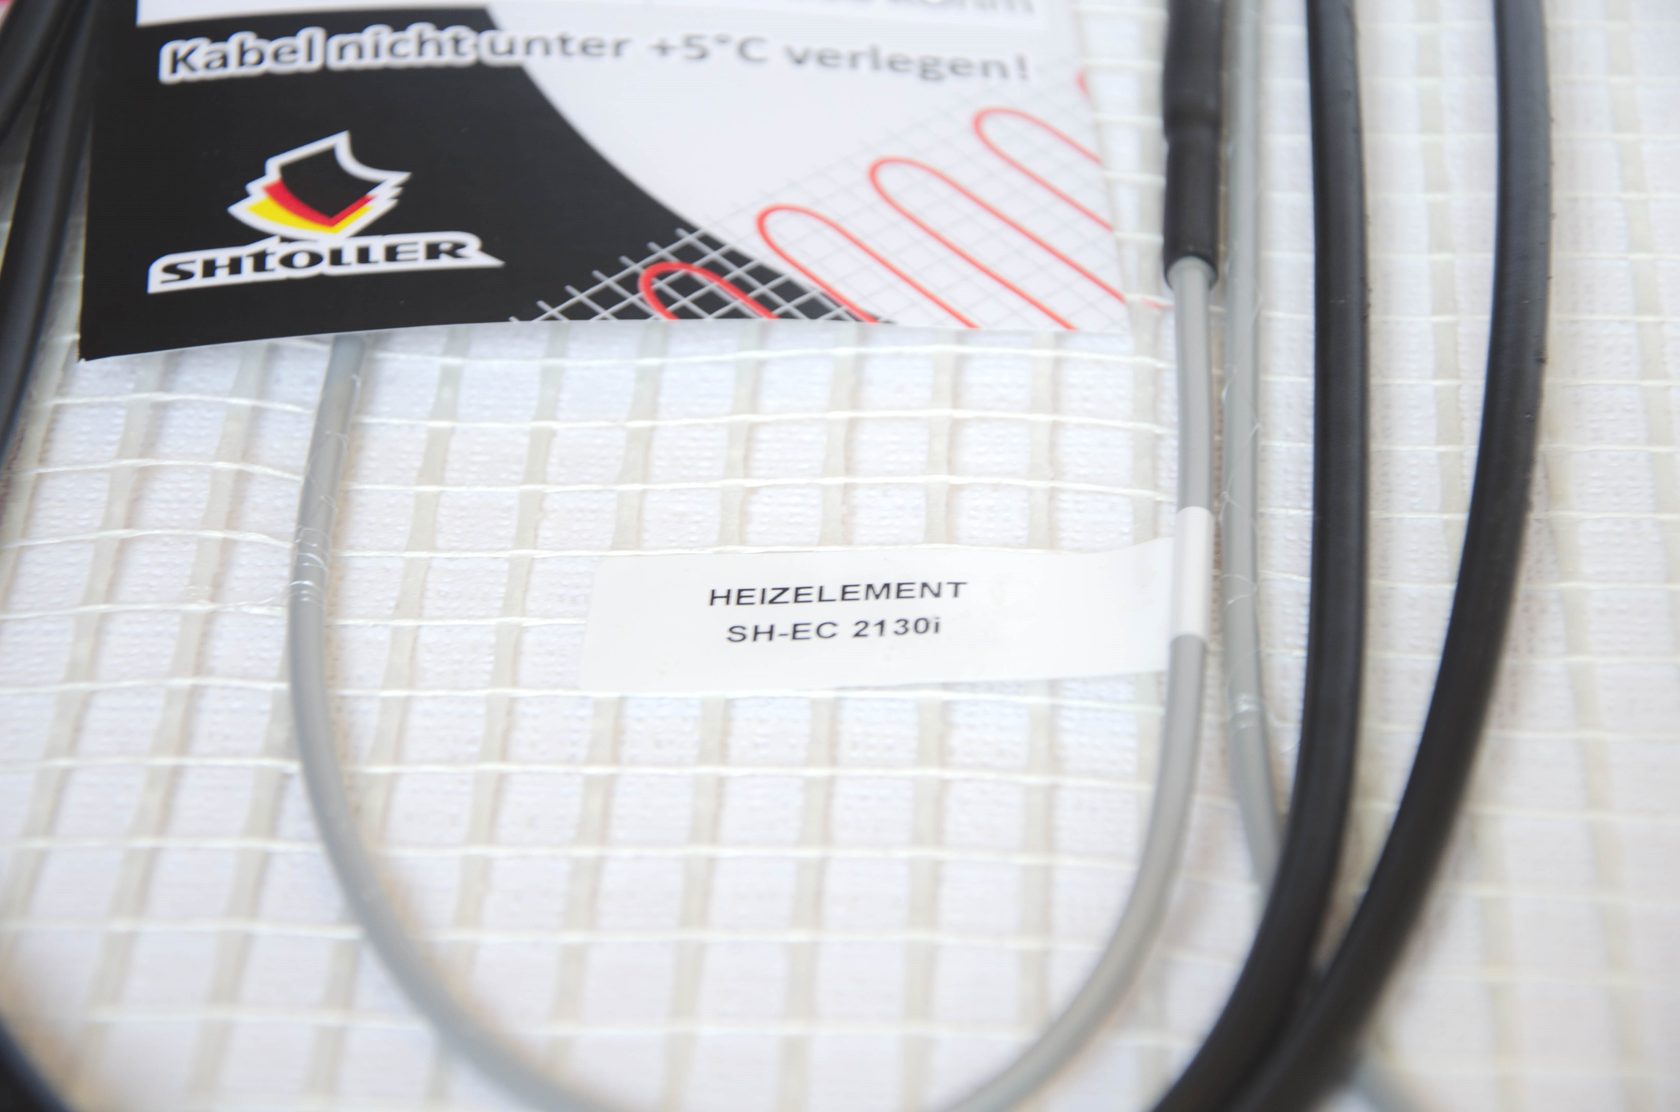 Електрична тепла підлога Shtoller SH-EC 2110i відгуки - зображення 5